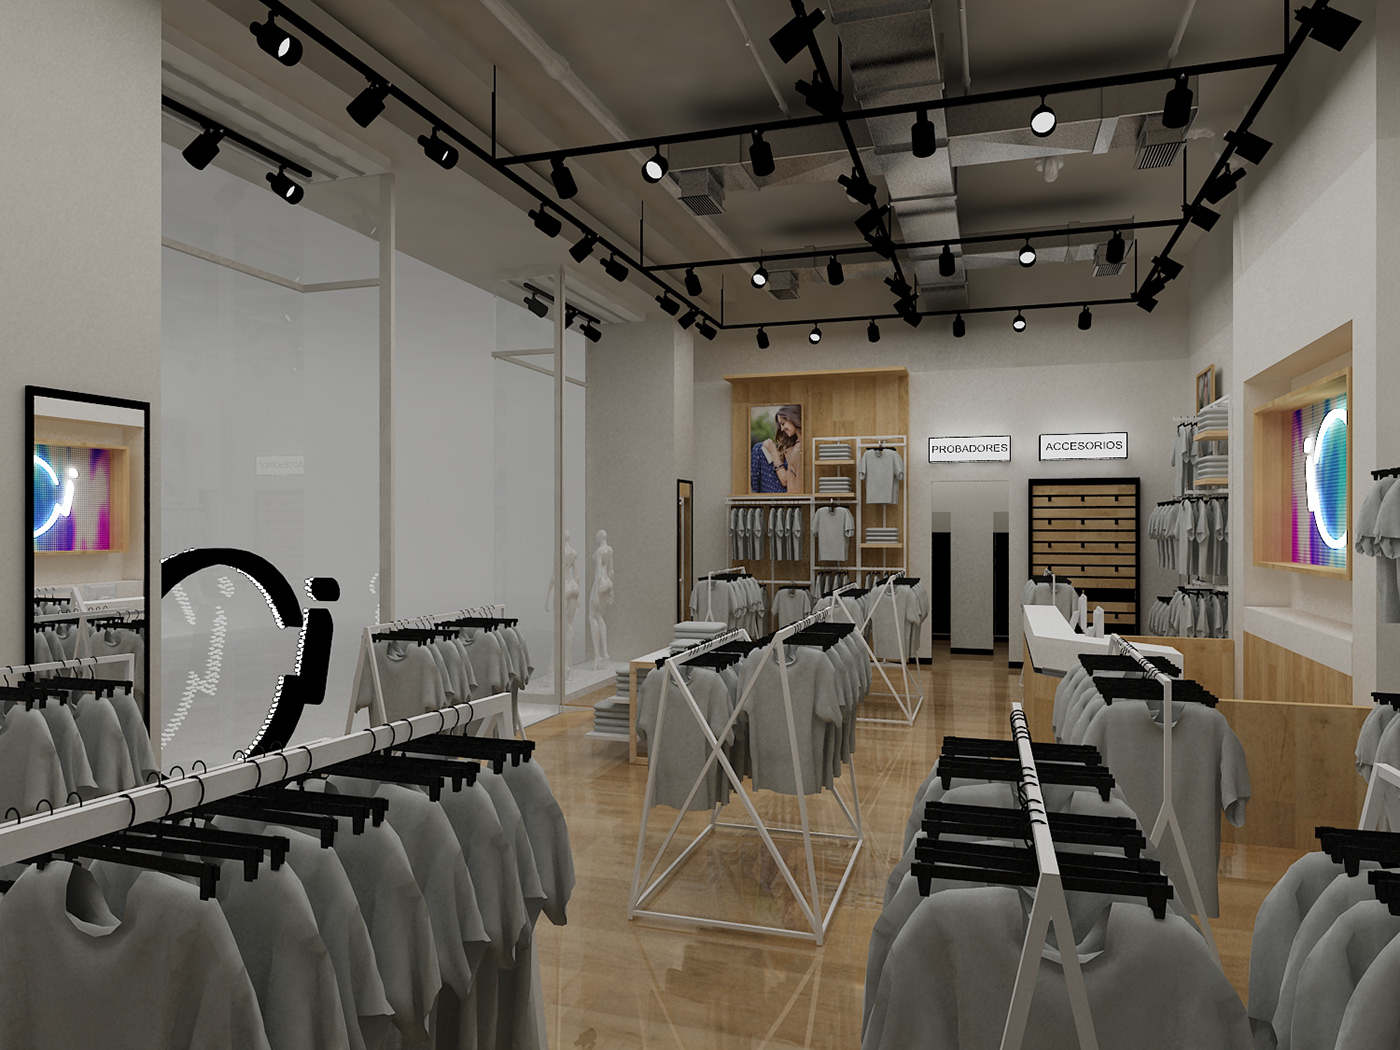 Retail store tienda diseño diseño interior Render arquitectura construccion design remodelacion